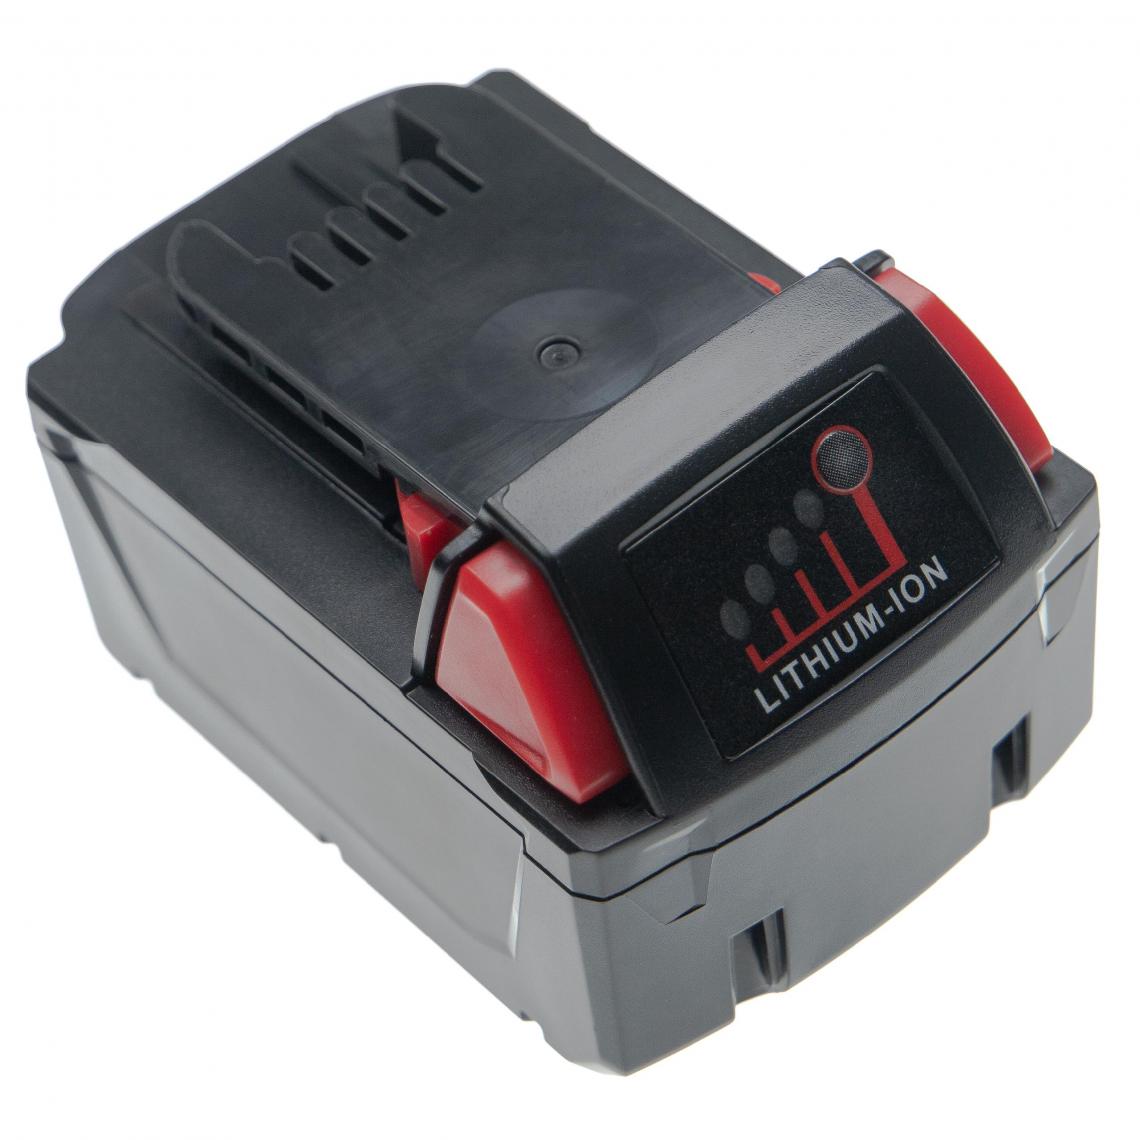 Vhbw - vhbw Batterie compatible avec Milwaukee 2620-20, 2620-21, 2620-22, 2625-20, 2625-21, 2625-21CT, 2626-20 outil électrique (4000mAh Li-ion 18V) - Clouterie